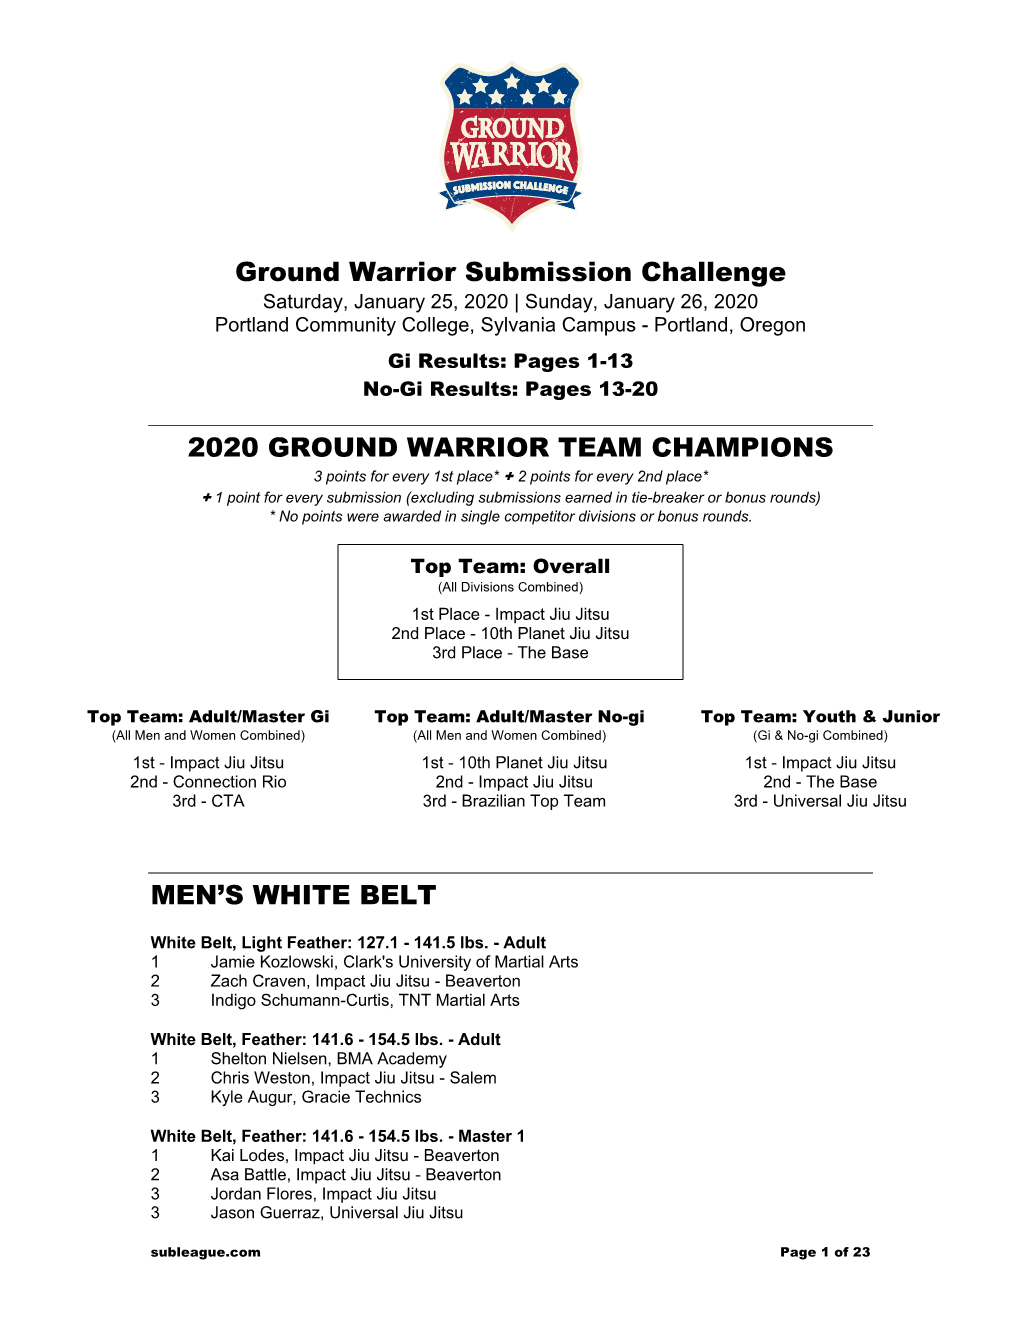 Ground Warrior Submission Challenge 2020 GROUND WARRIOR TEAM CHAMPIONS MEN's WHITE BELT